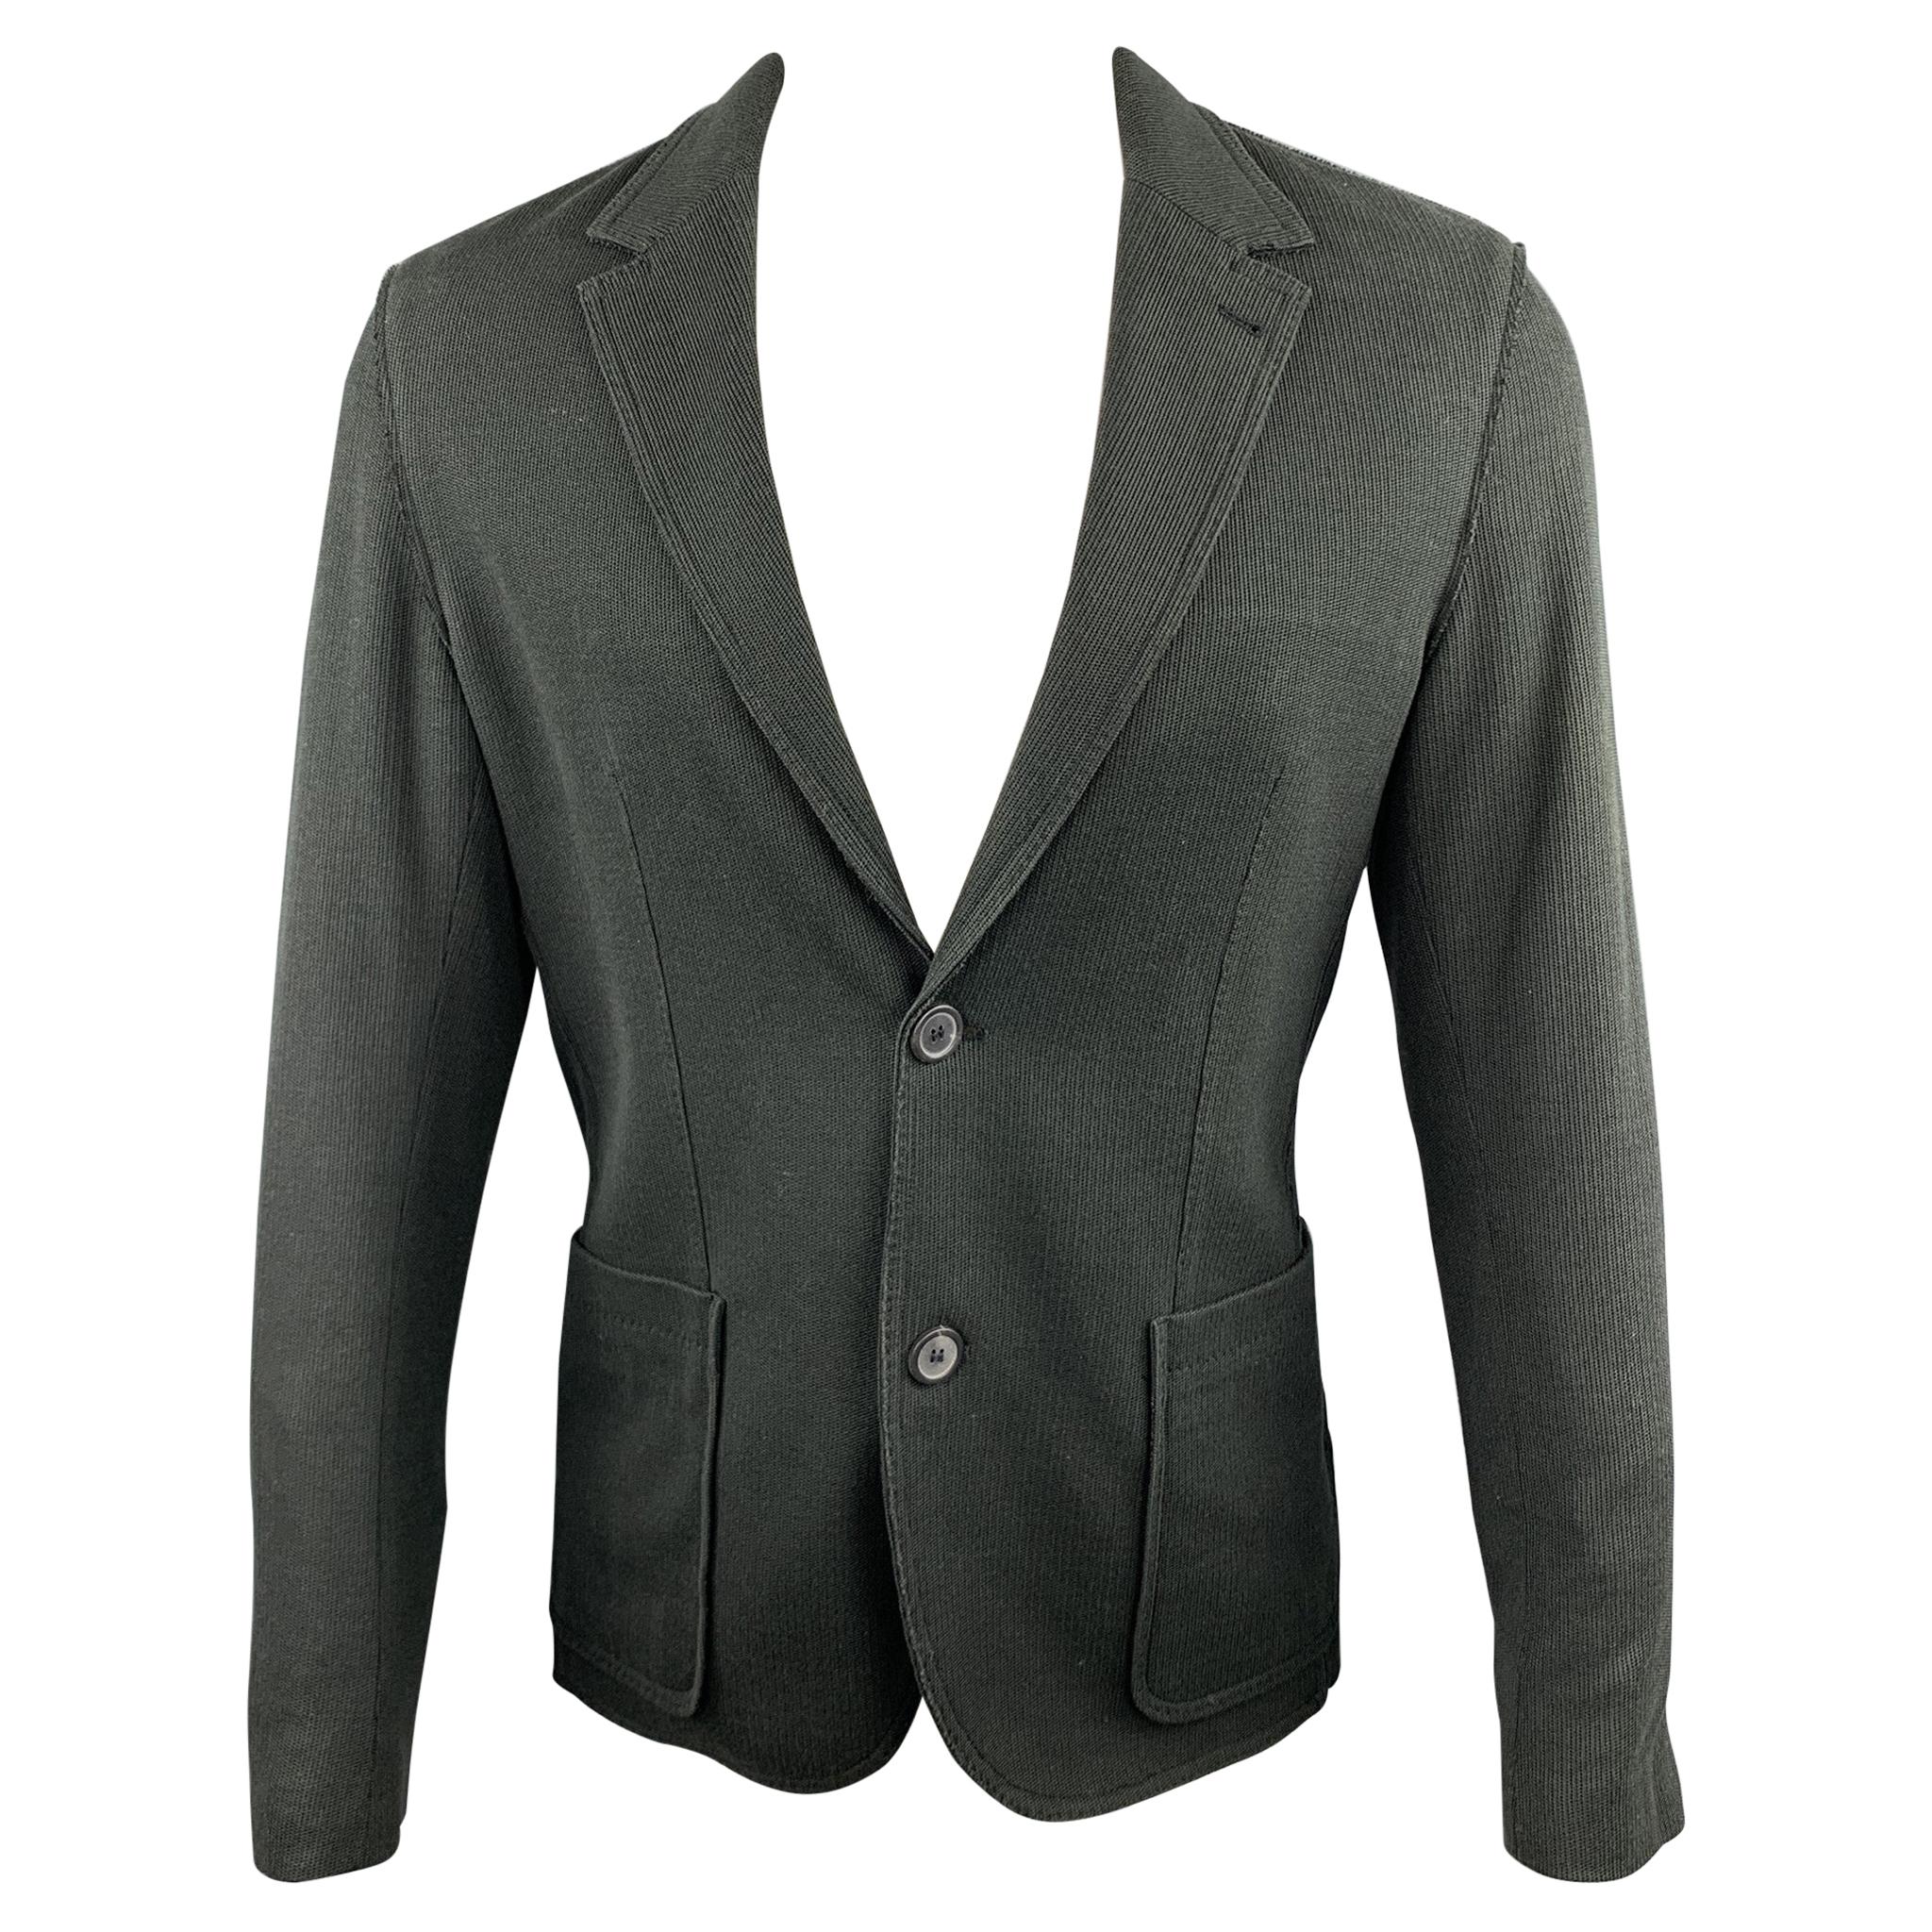 LANVIN Size 38 Charcoal Woven Cotton Notch Lapel Sport Coat Jacket